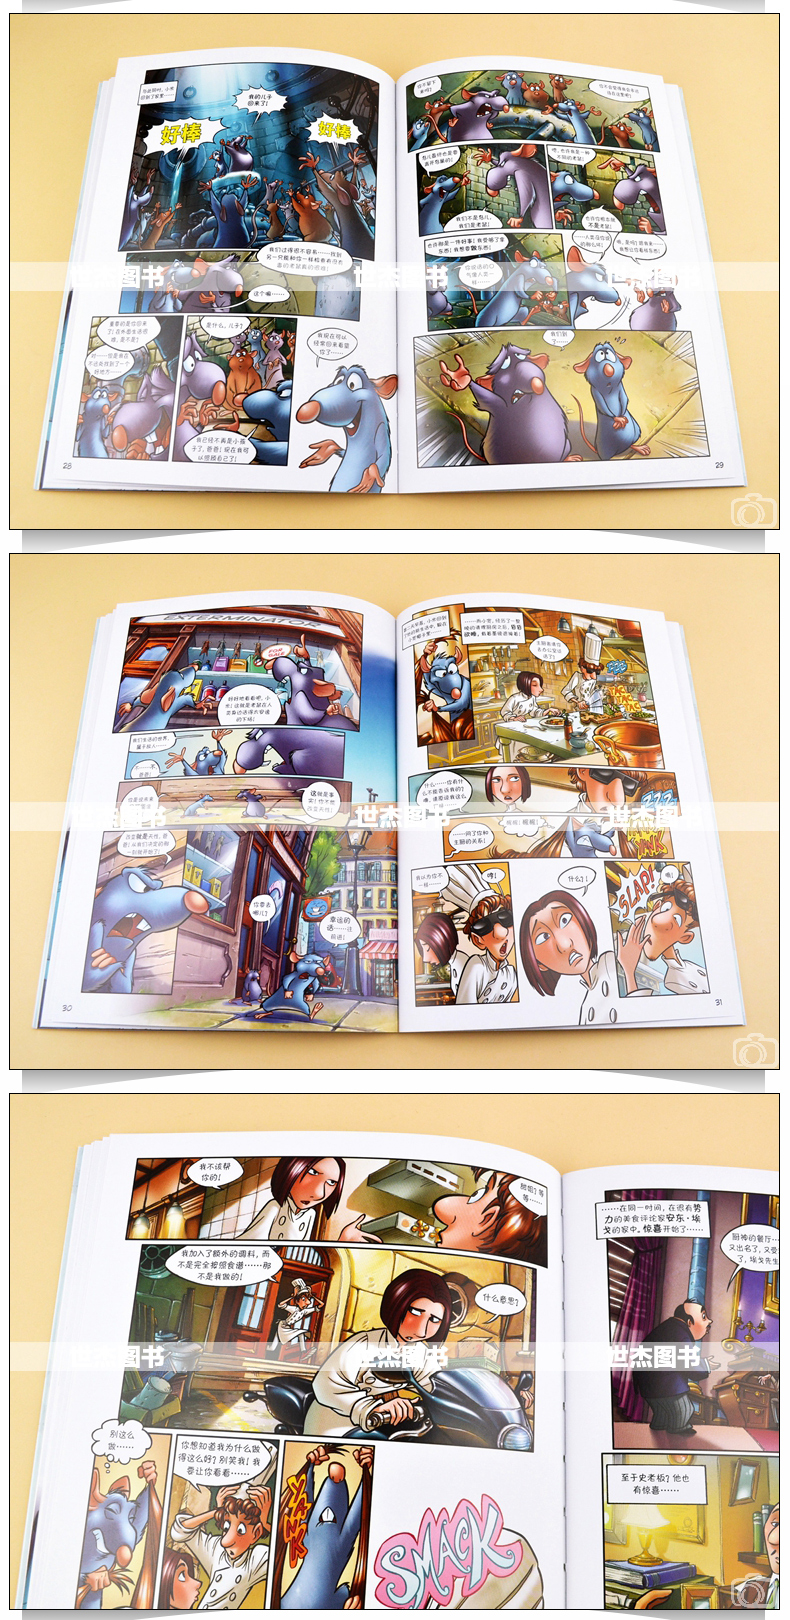 正版 迪士尼漫画 美食总动员 Disney迪士尼皮克斯动画电影漫画典藏 老鼠Remy梦想故事儿童卡通漫画艺术学生美术少儿绘本书钢铁月球